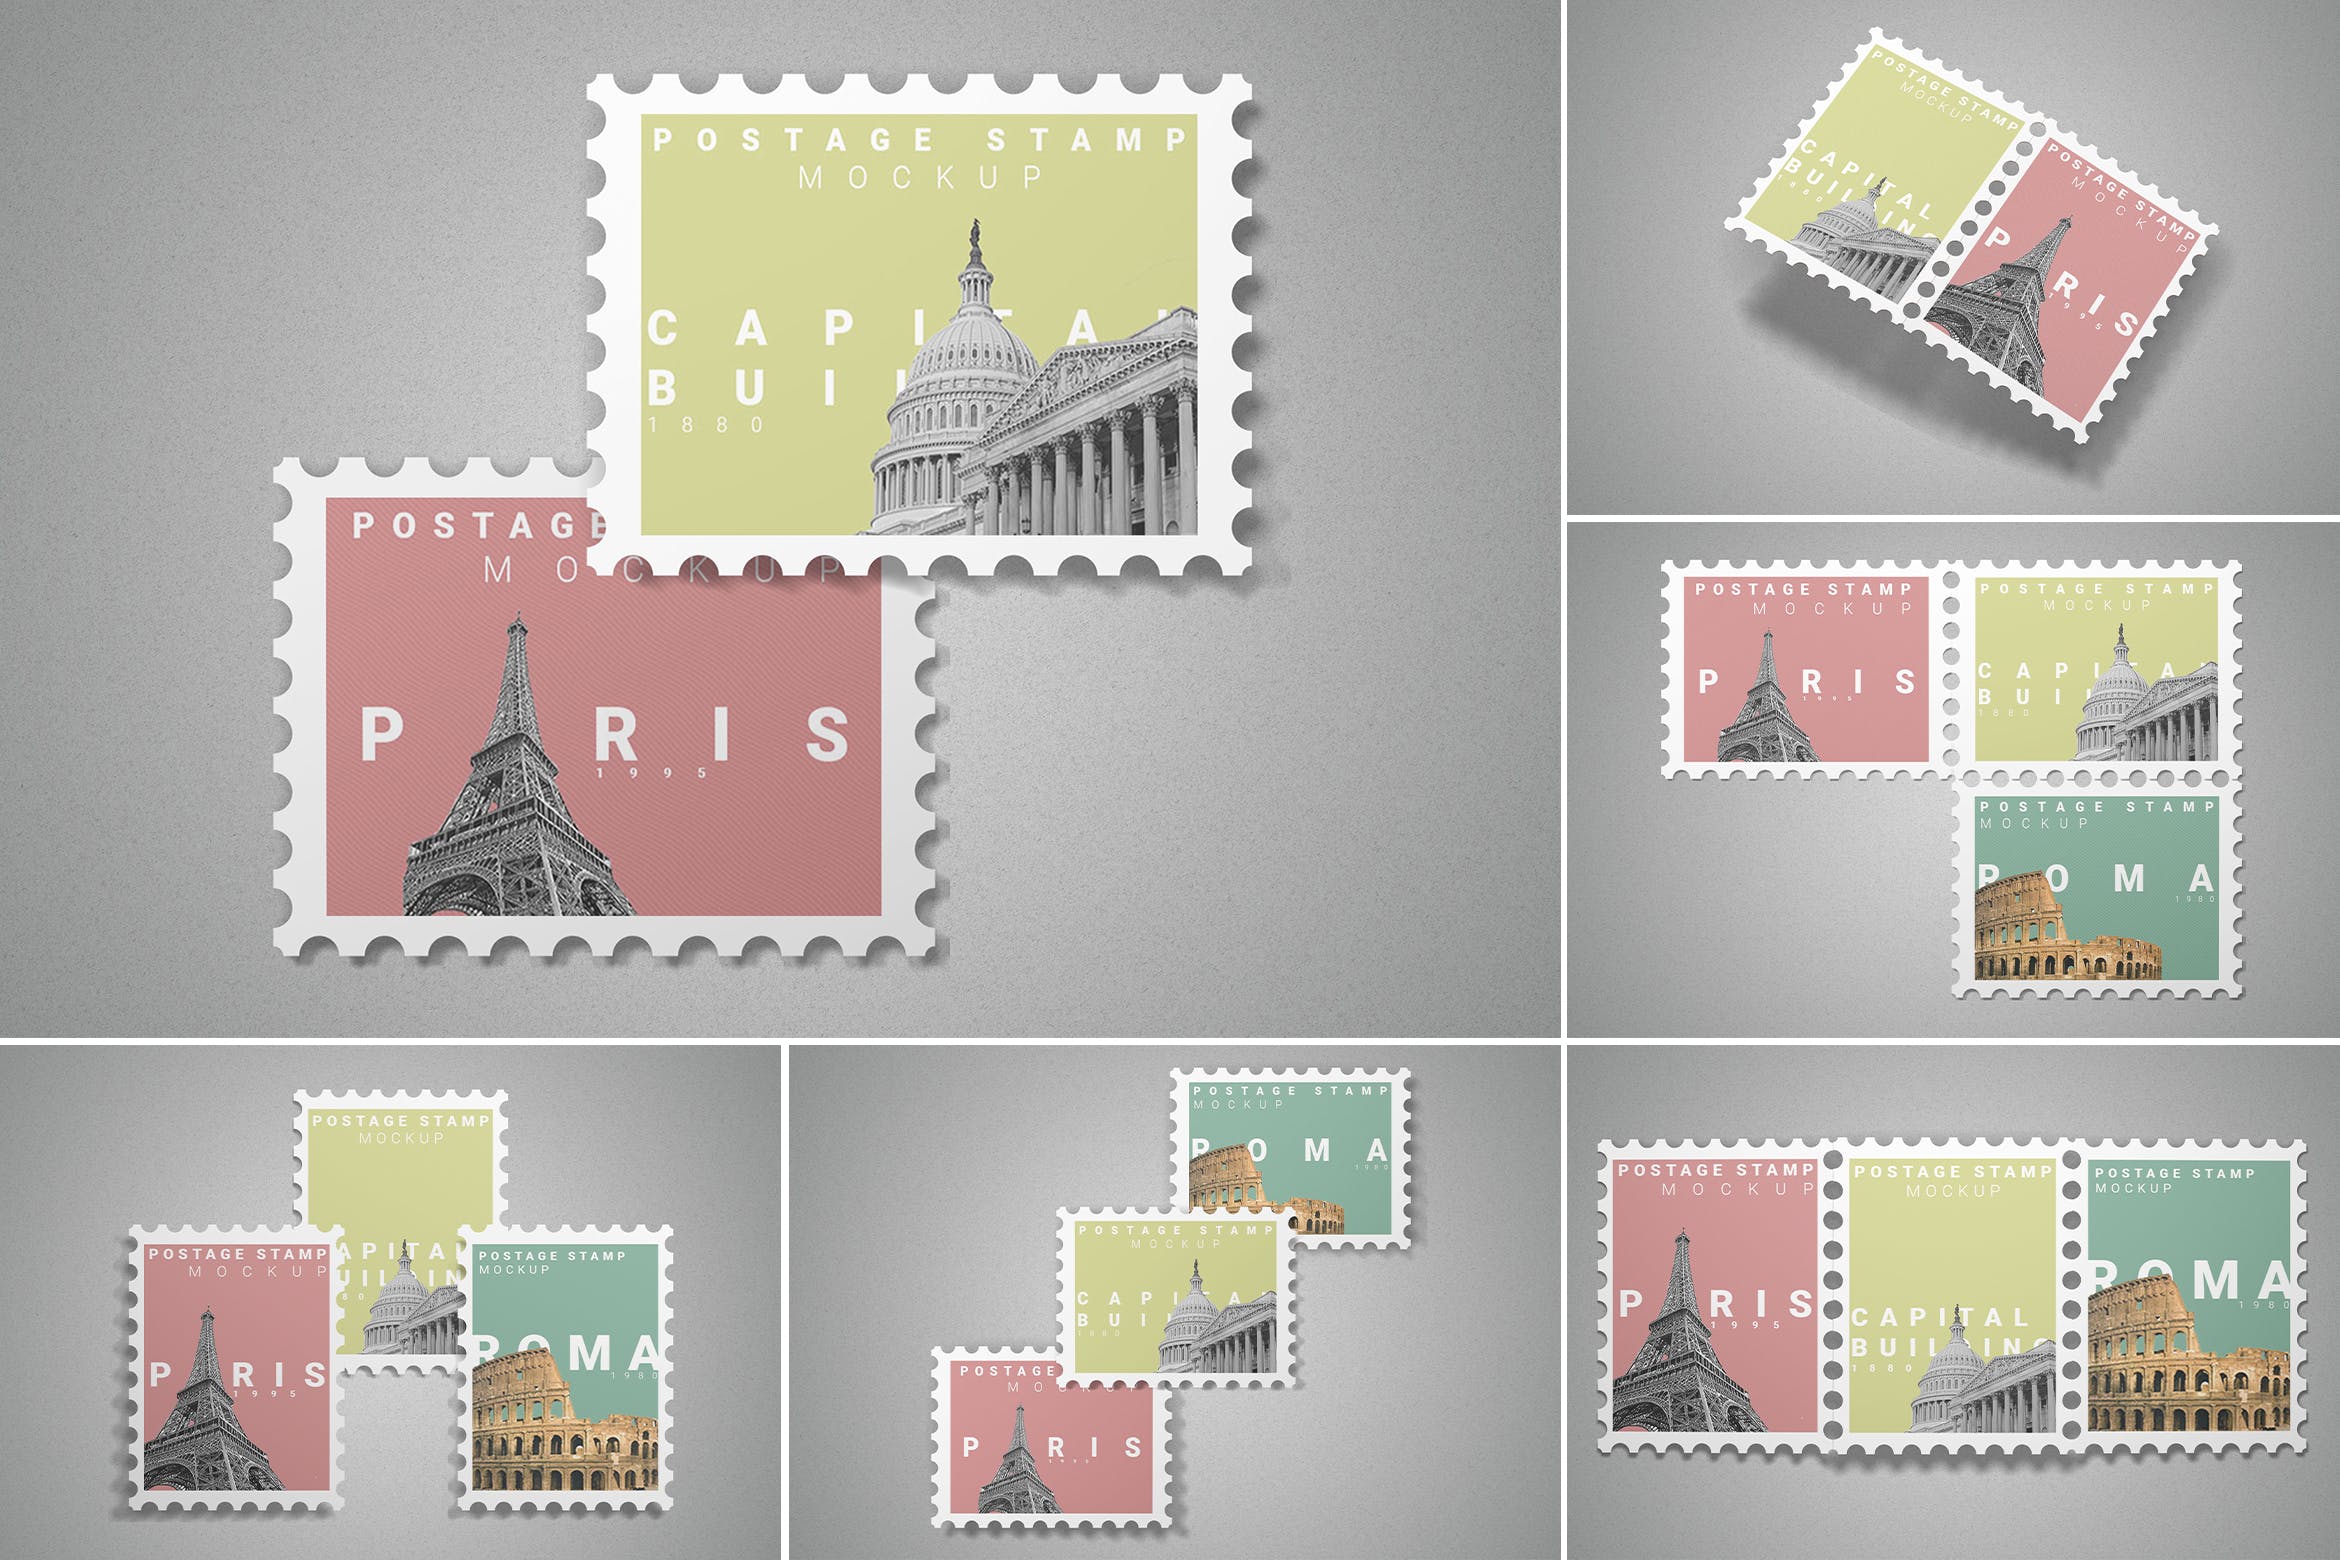 10款集邮纪念邮票文创设计样机模板postagestampmockup10psdfiles